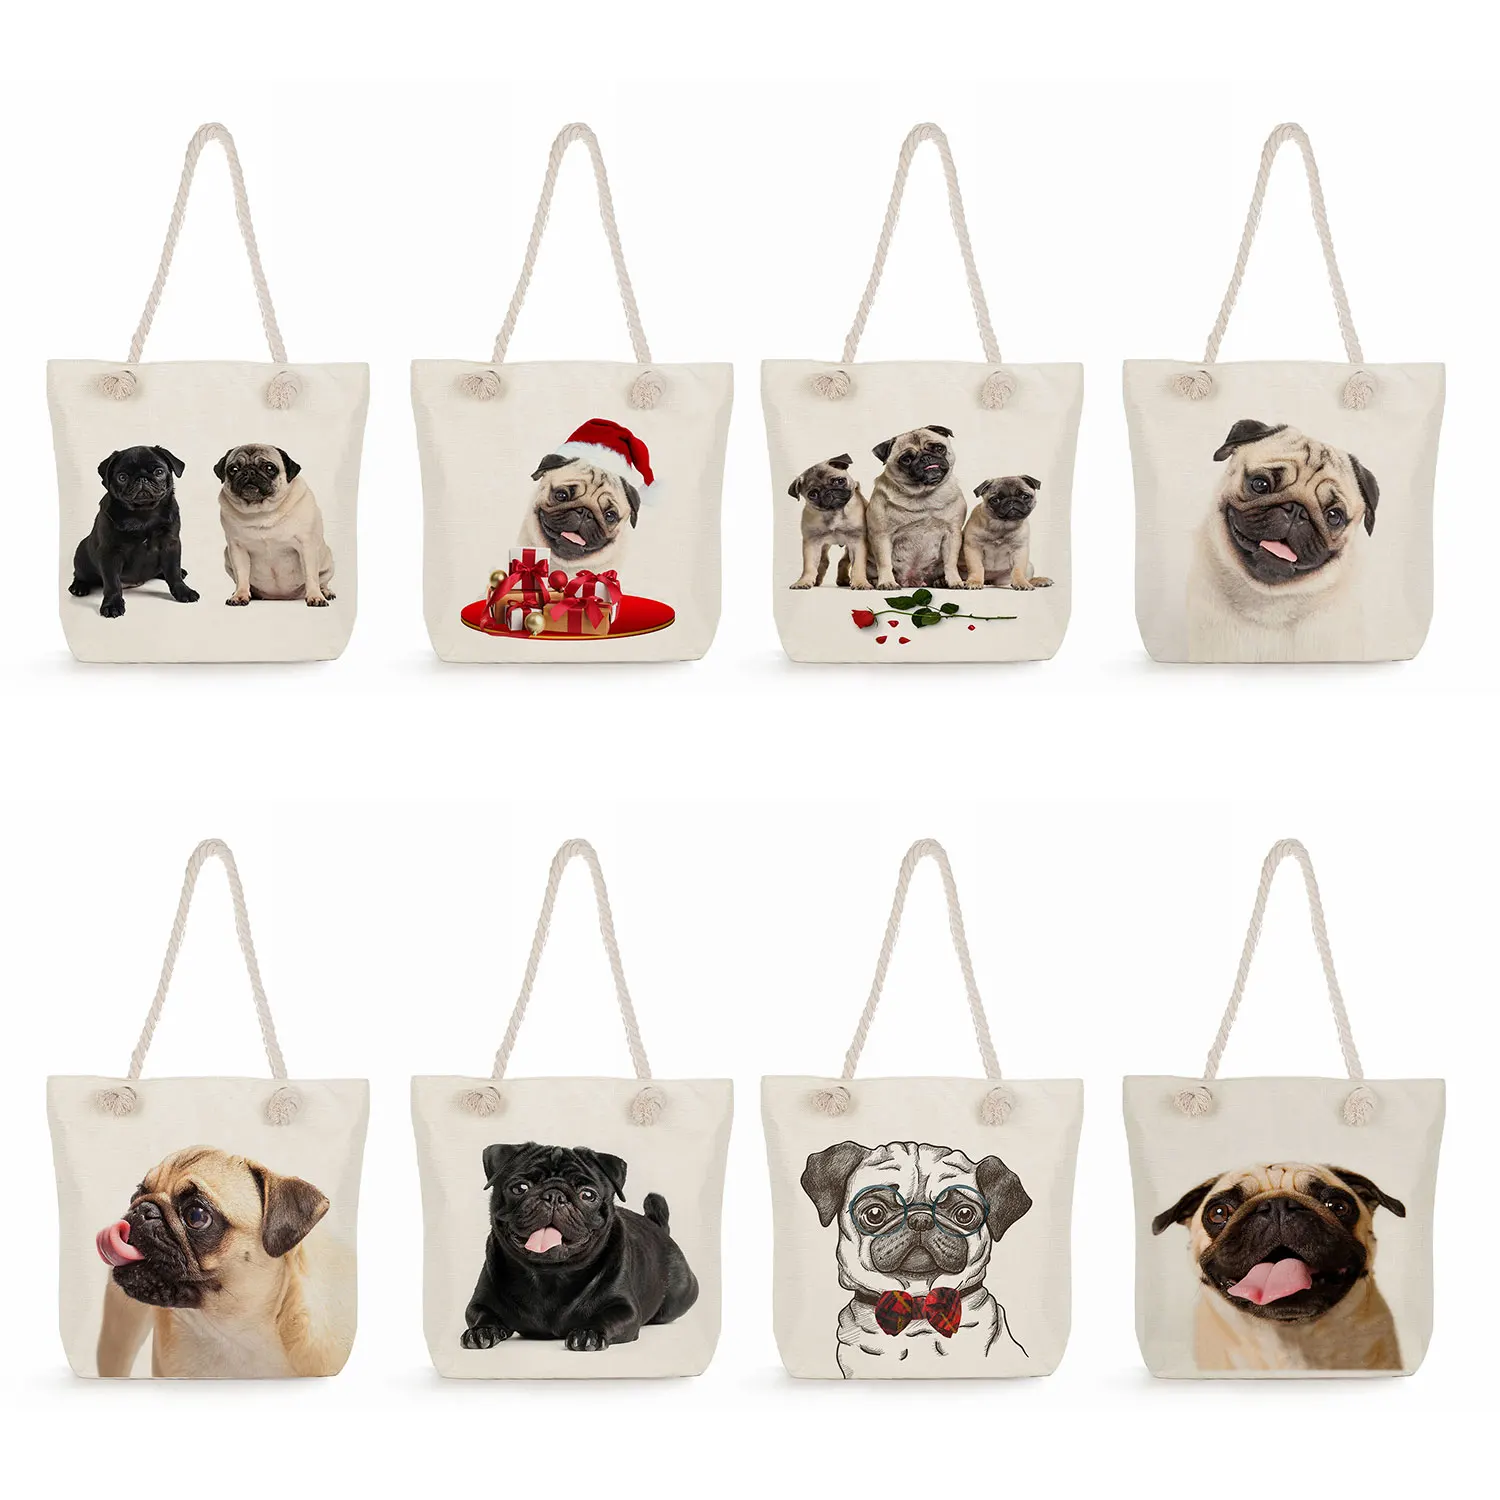 

Pug Dog Print Shopping Bag Animal Graphic Polyester Fabric Shoulder Bag Grocery Tote Bags Eco Reusable Storage Handbags